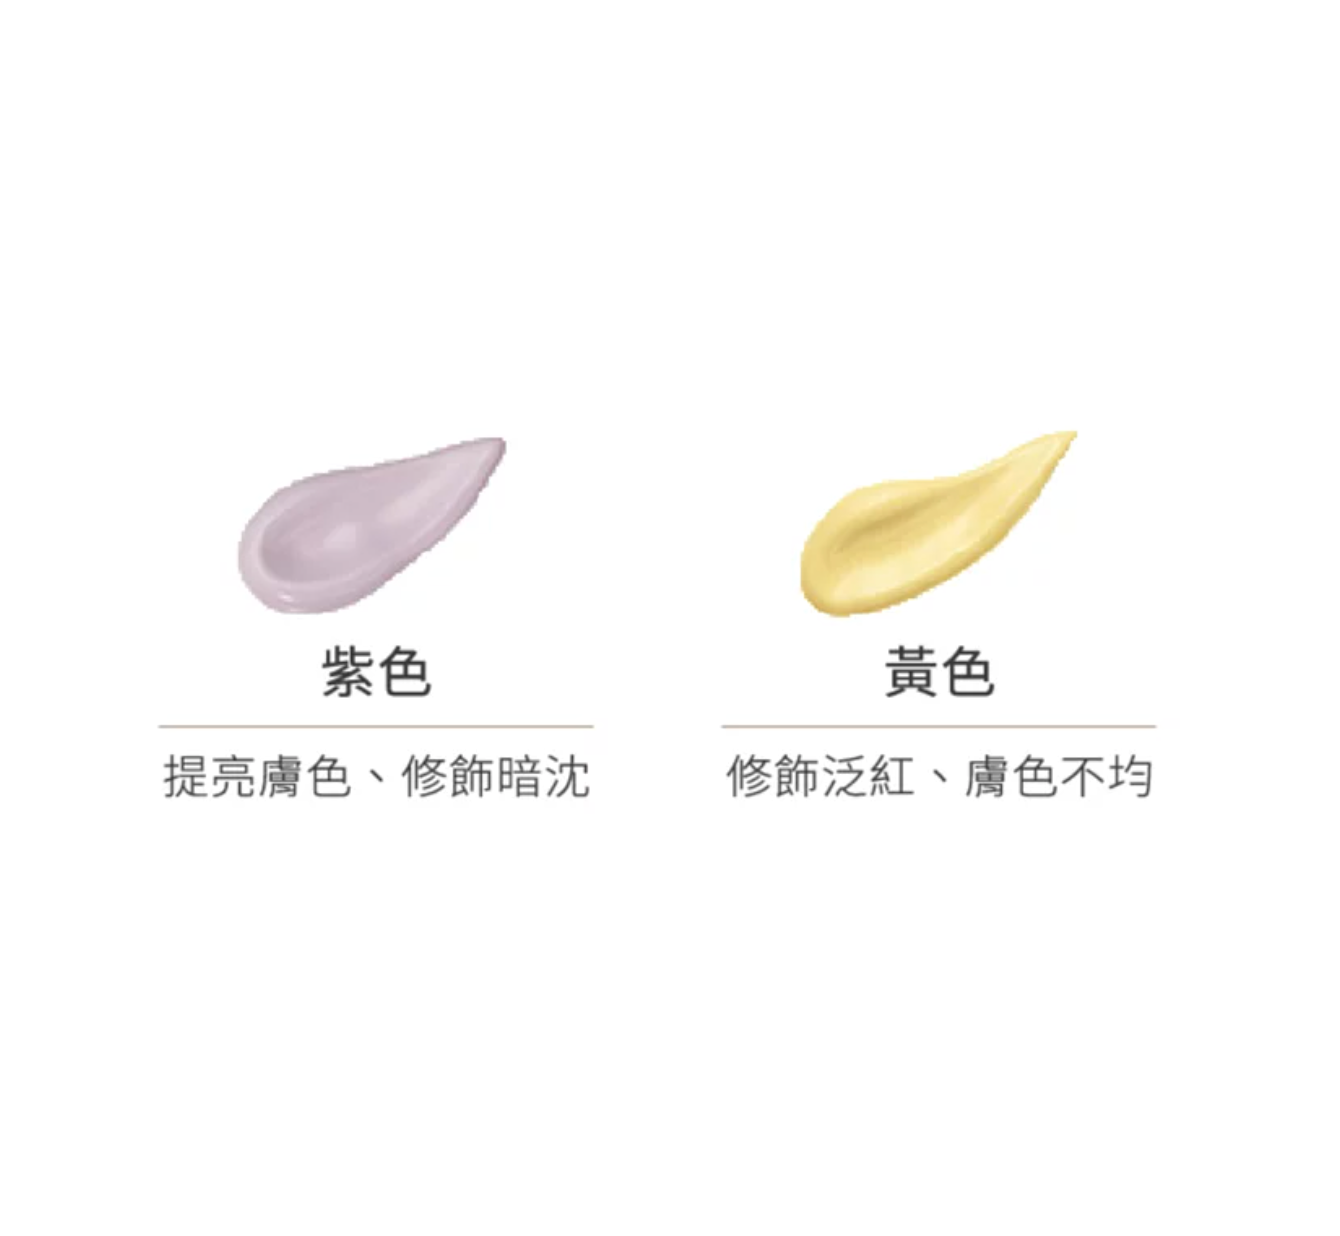 日本 Only Minerals 礦物美肌飾底乳